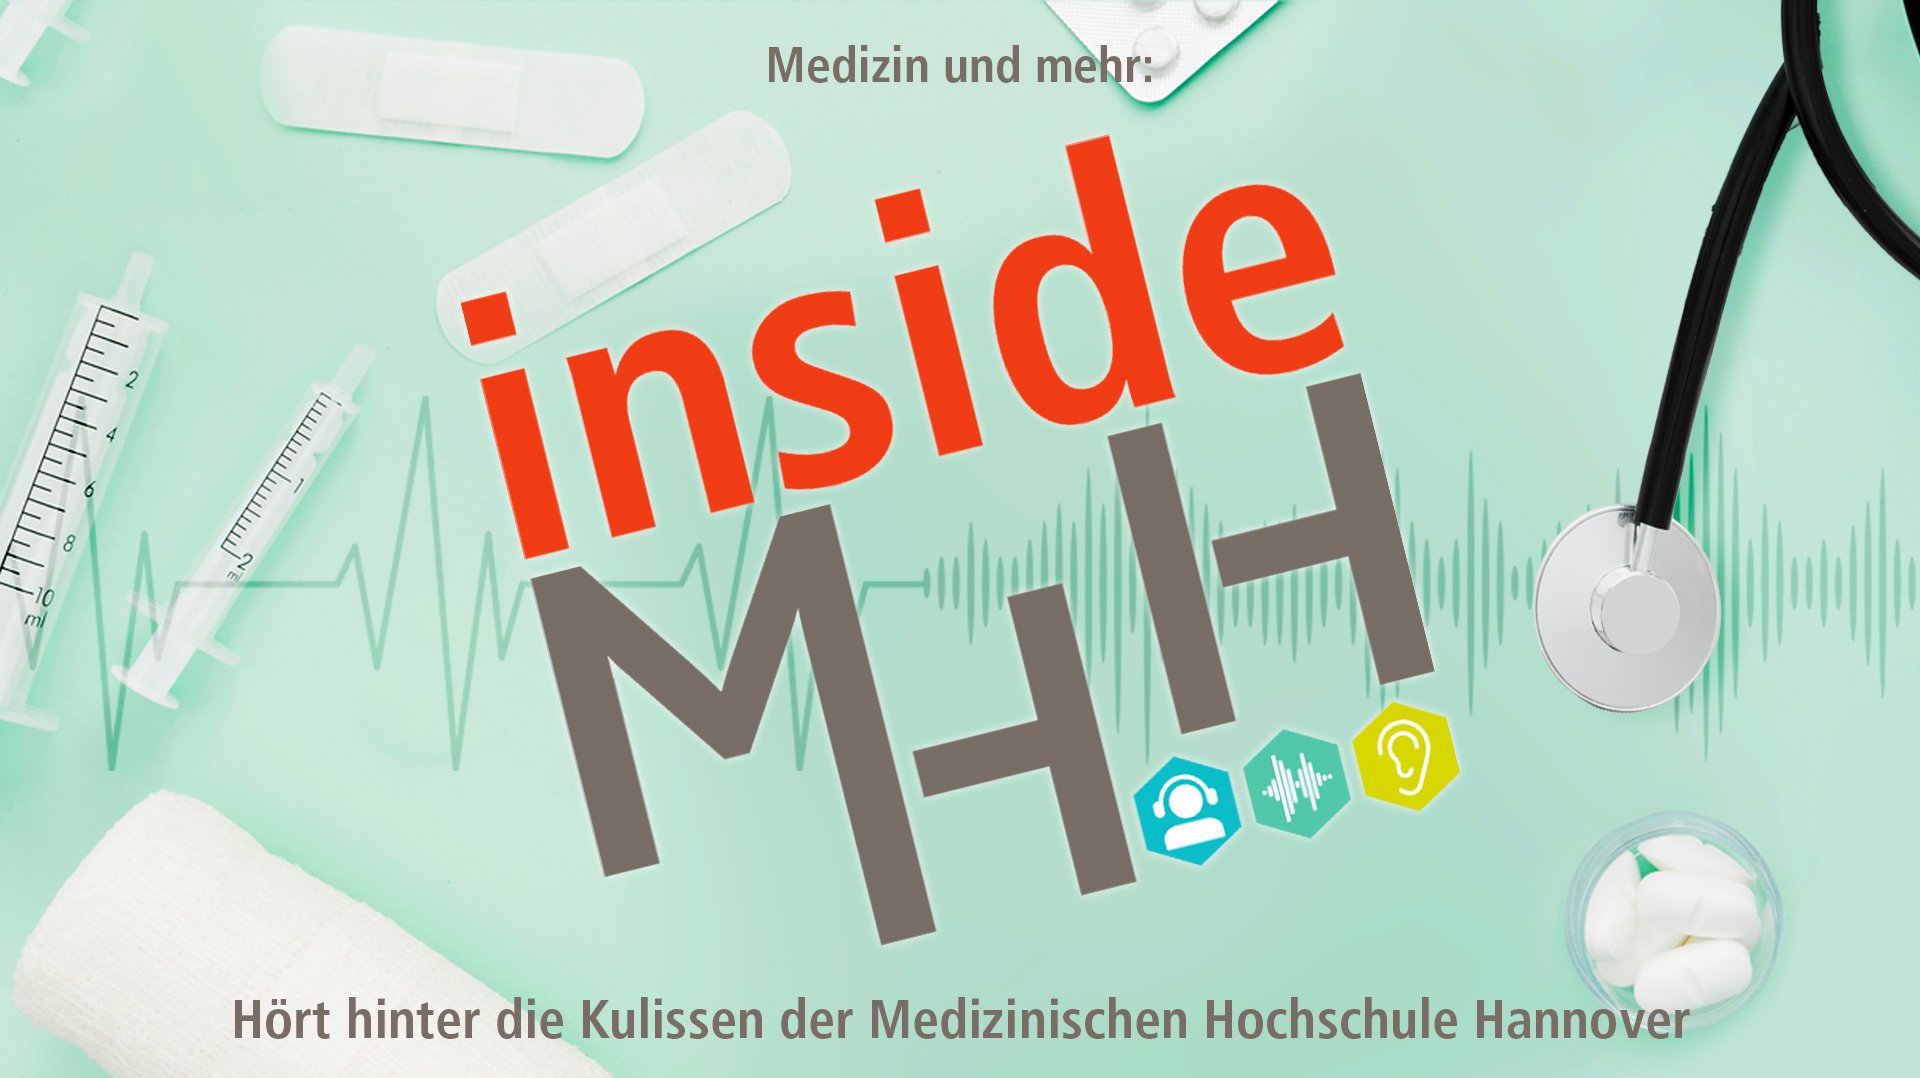 Grafik mit Schriftzug Medizin und mehr Inside MHH Hört hinter die Kulissen der Medizinischen Hochschule Hannover. Im Hintergrund sind Spritzen, Pflaster und ein Stethoskop abgebildet. 